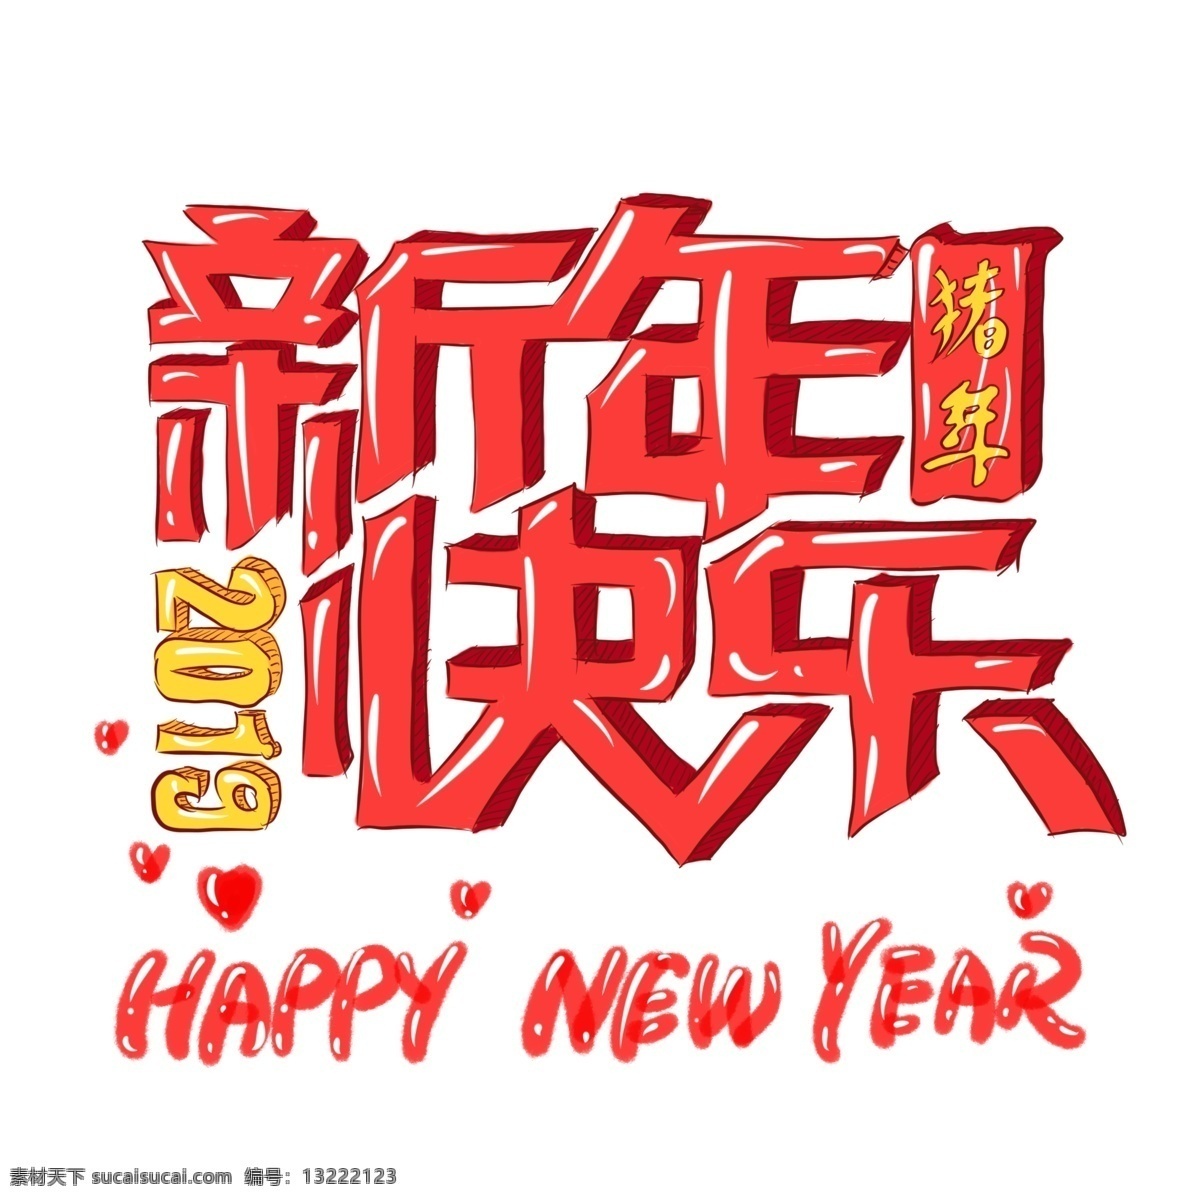 手绘 艺术 字 2019 猪年 新年 快乐 字体 手绘字体 新年快乐 艺术字